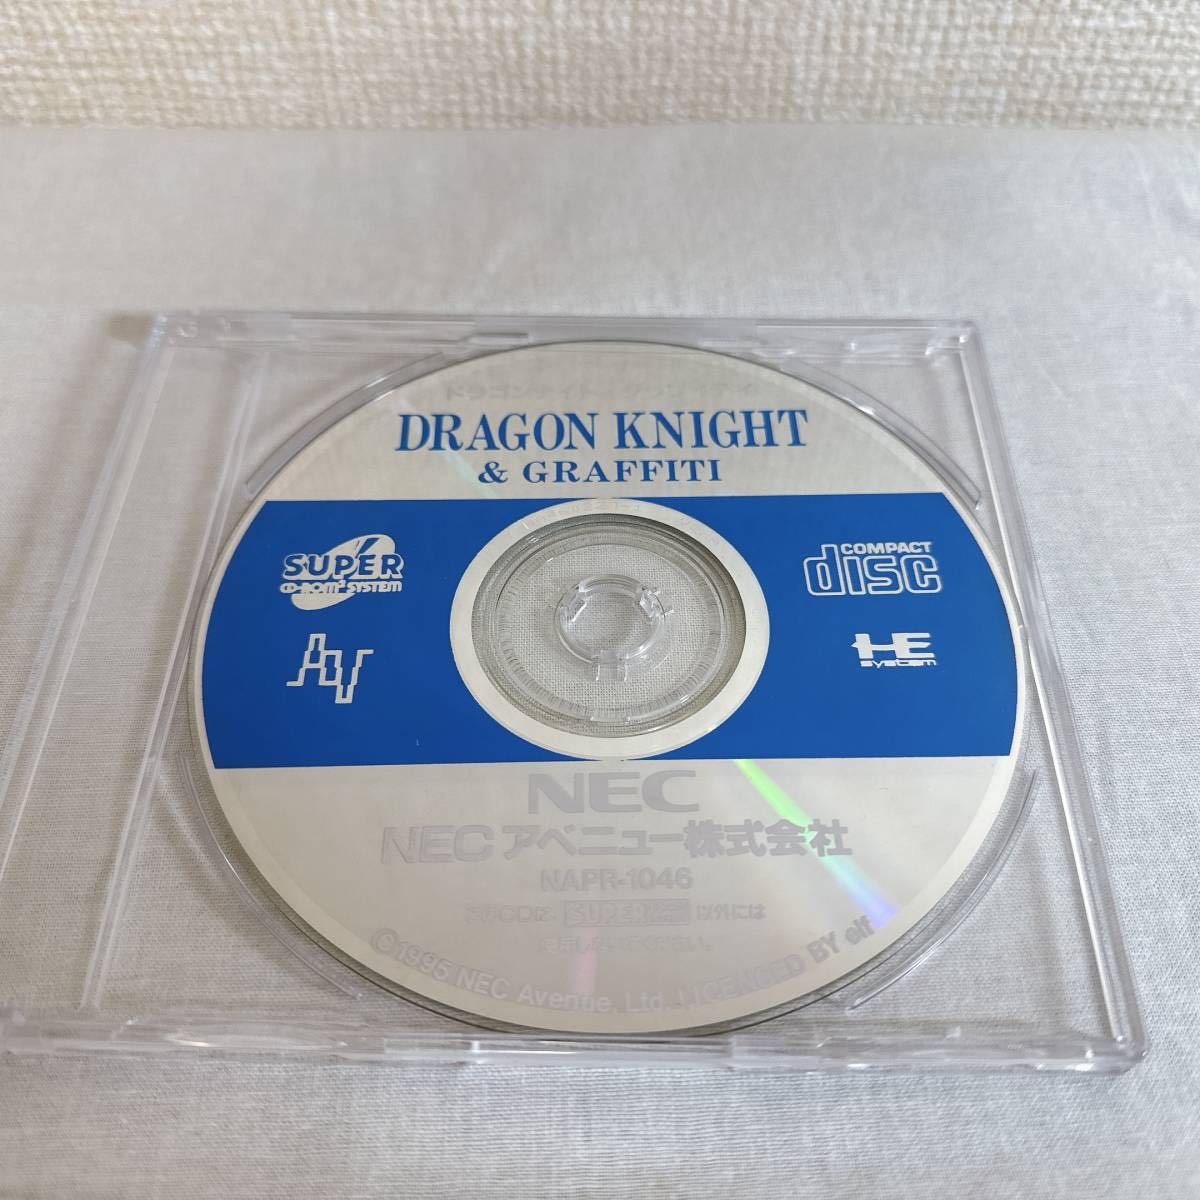 2022年新作 SUPER グラフィティ & ドラゴンナイト DRAGONKNIGHTII ソフトのみ ☆PCエンジン CD-ROM2(スーパーCDロムロム) クリックポスト発送☆ 中古 ロールプレイング